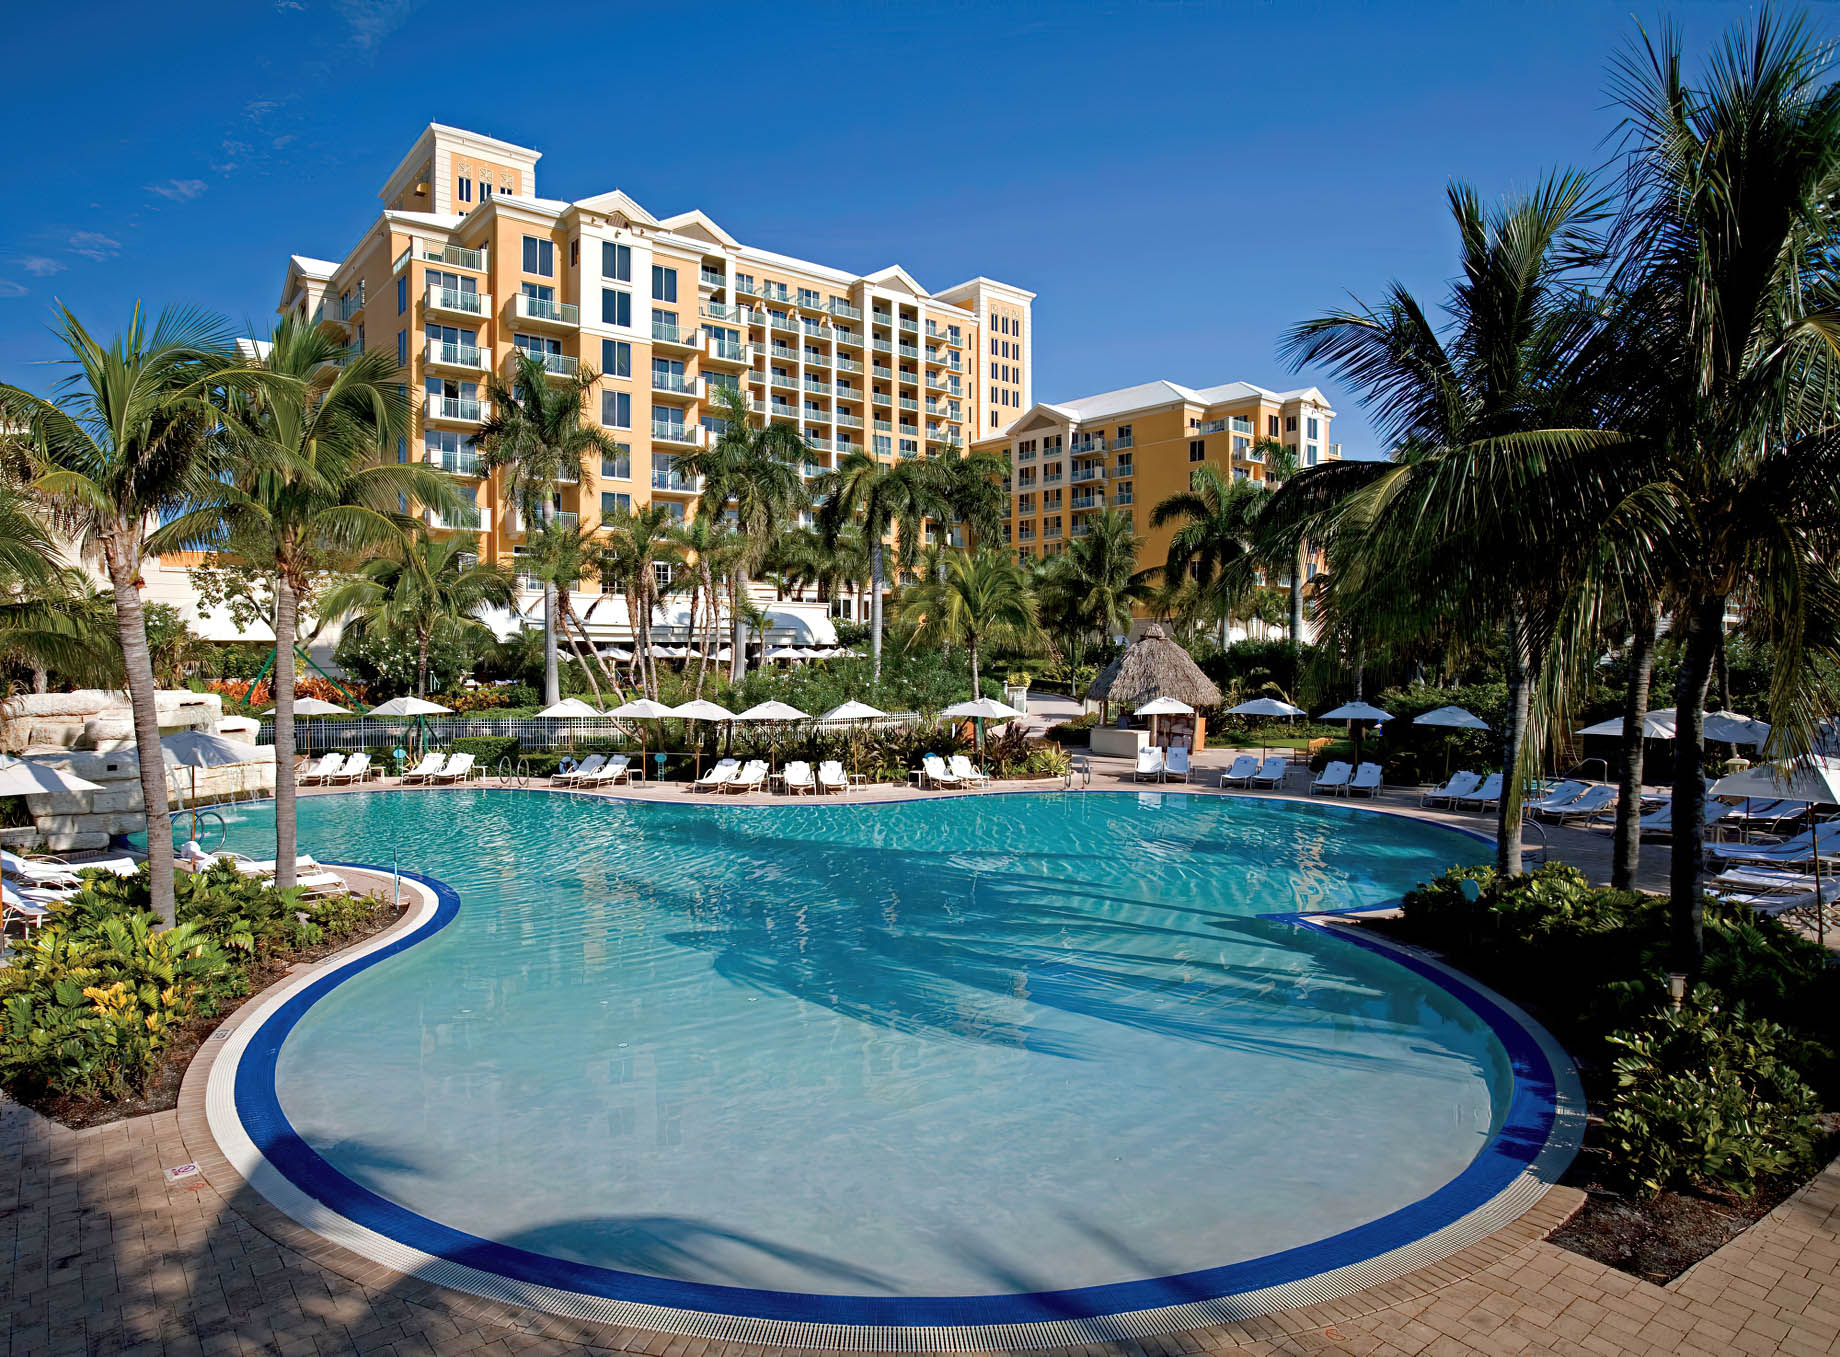 The Ritz-Carlton Key Biscayne, Miami Hotel - Miami, FL, USA - Exterior Pool View